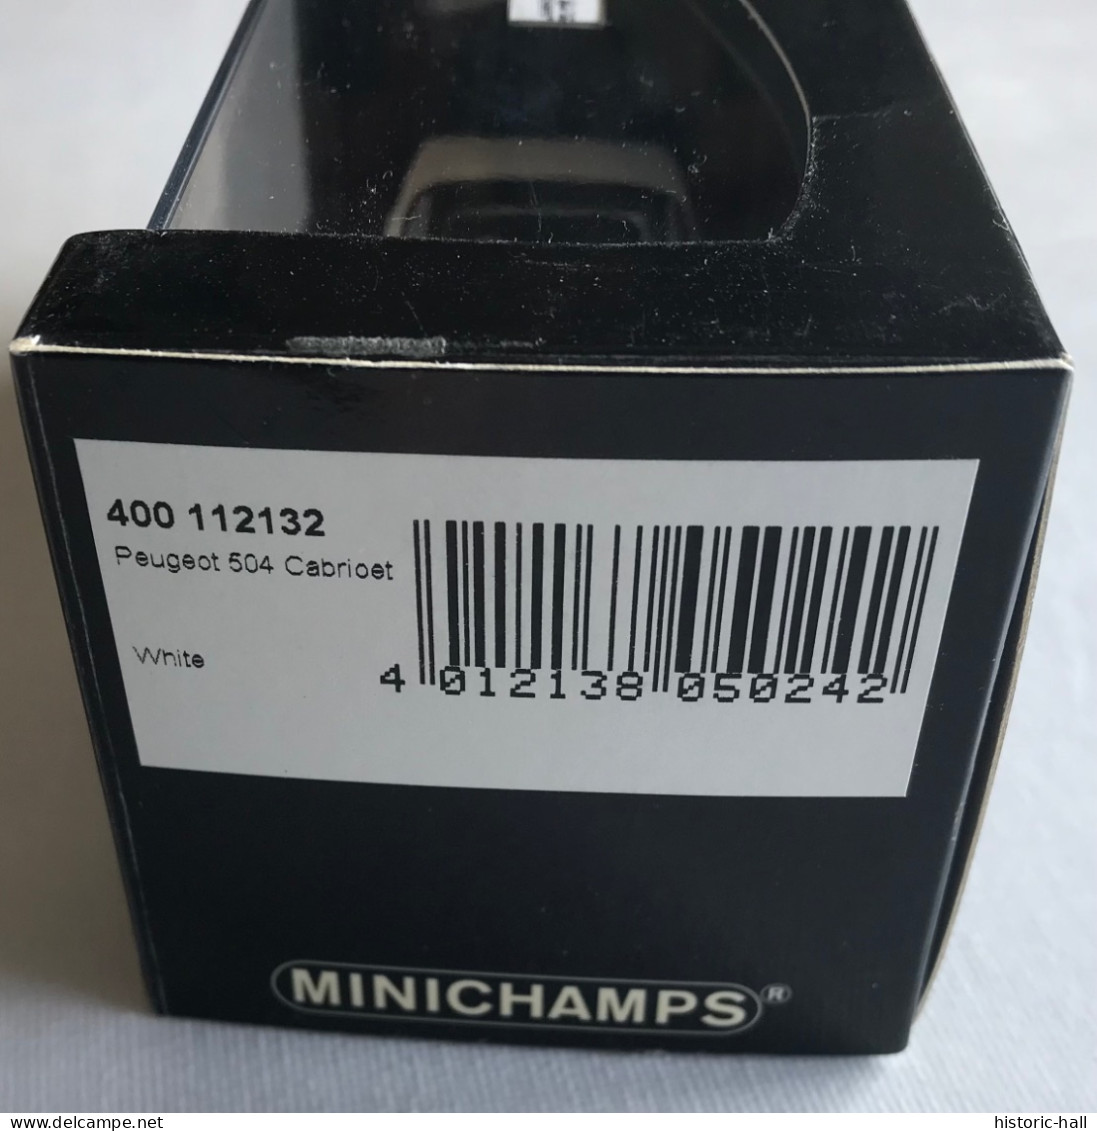 MINICHAMPS - PEUGEOT 504 Cabriolet - Minichamps